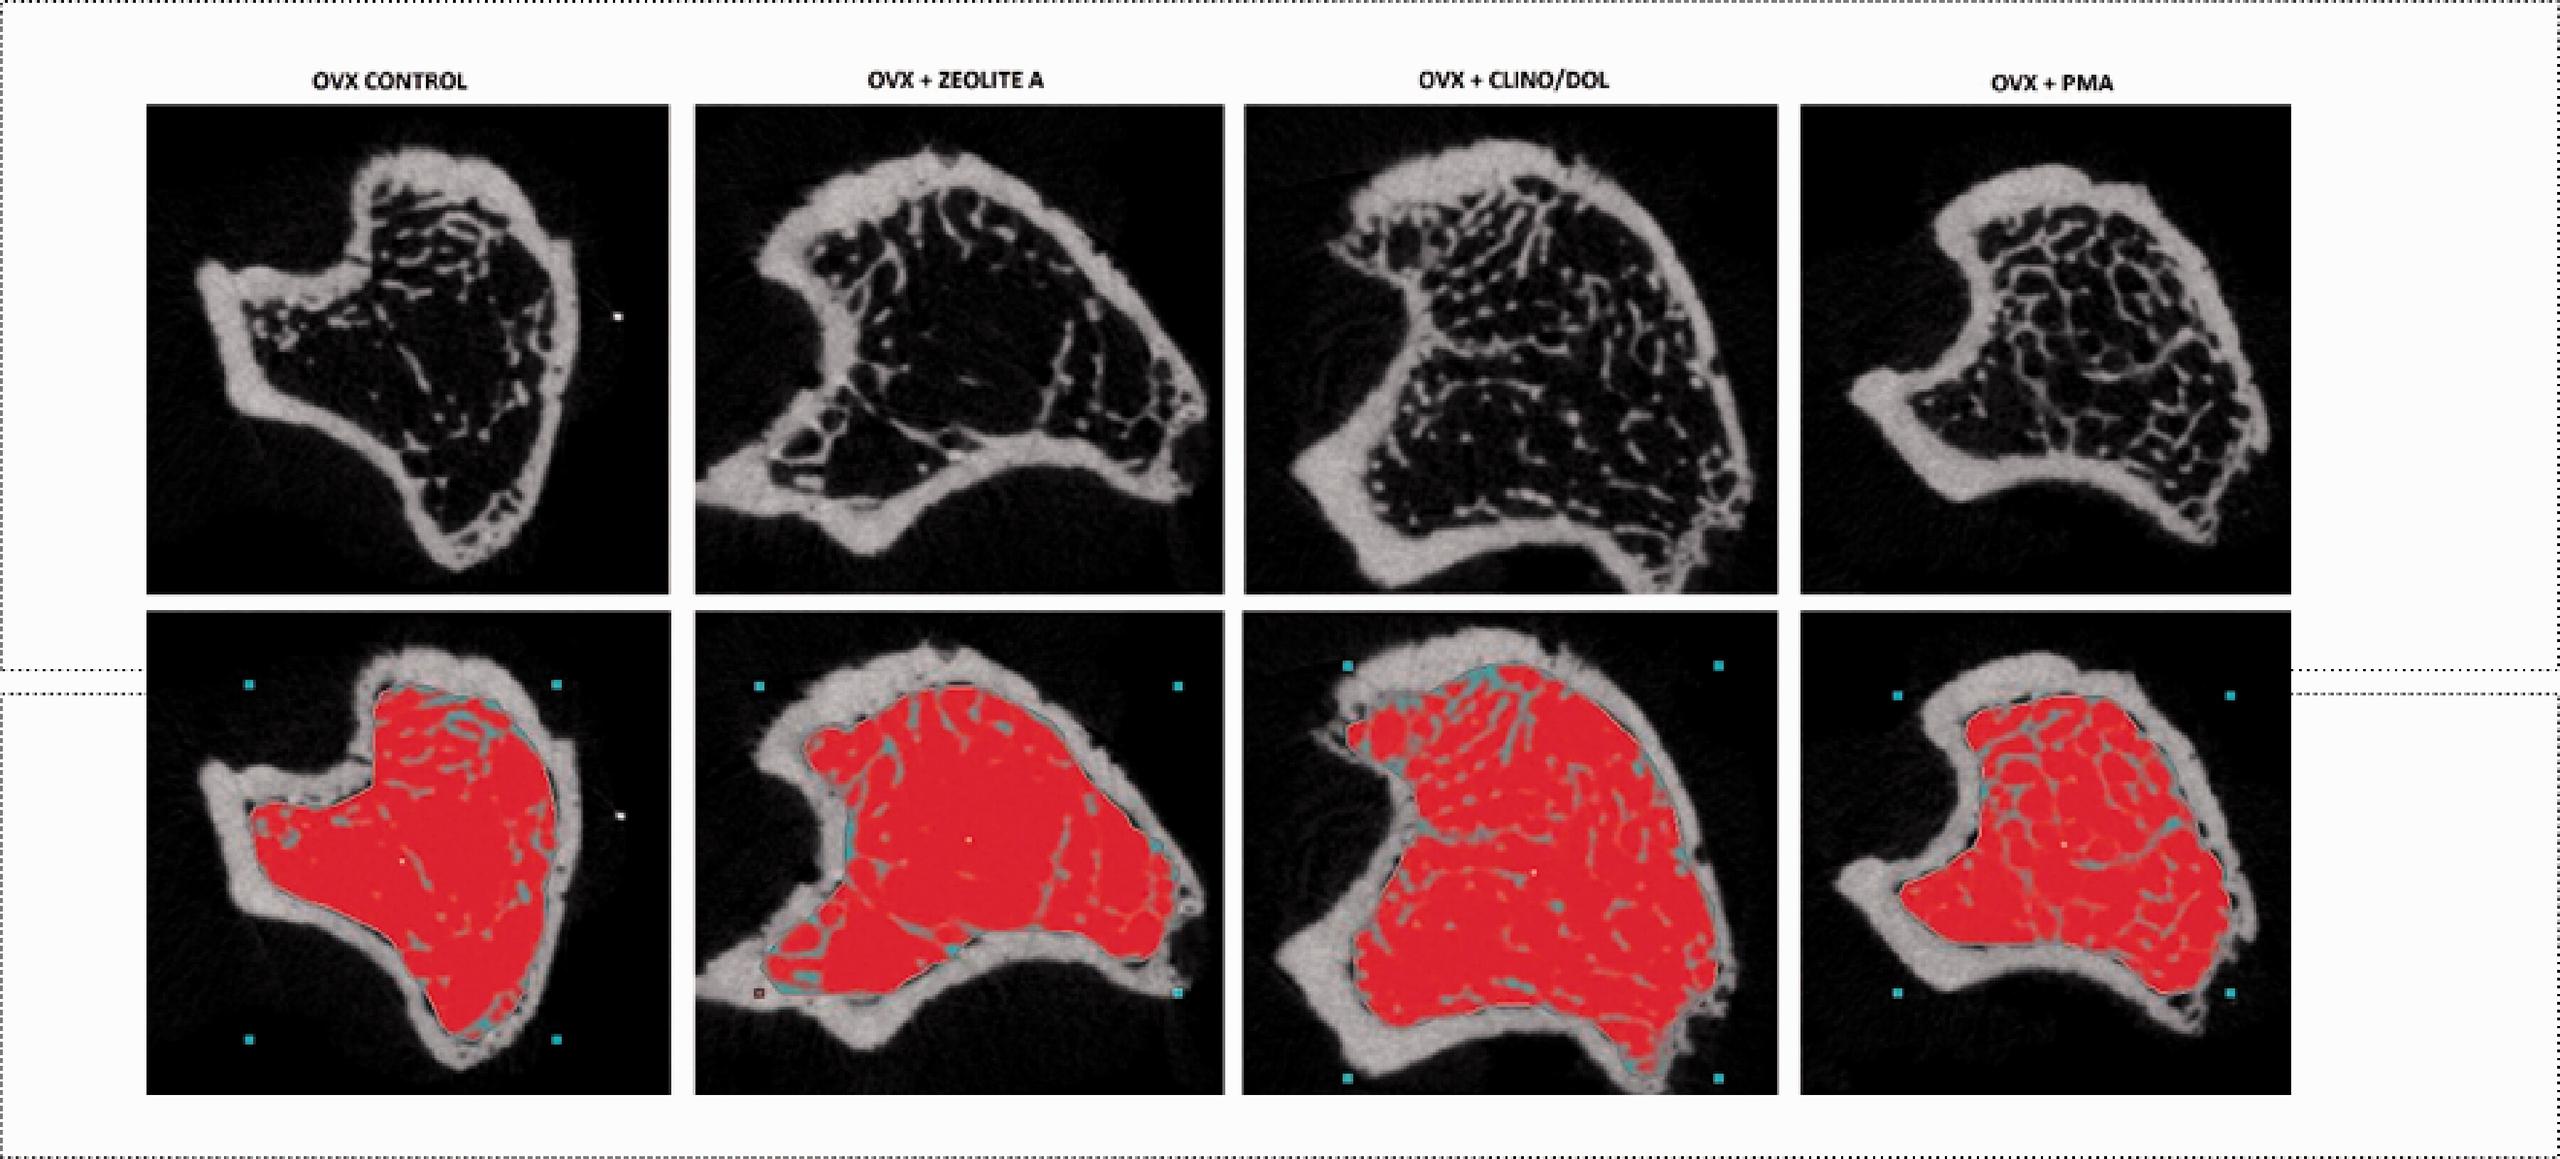 Il trattamento dell'osteoporosi con una zeolite modificata mostra effetti benefici in un modello di ratto osteoporotico e in uno studio clinico sull'uomo